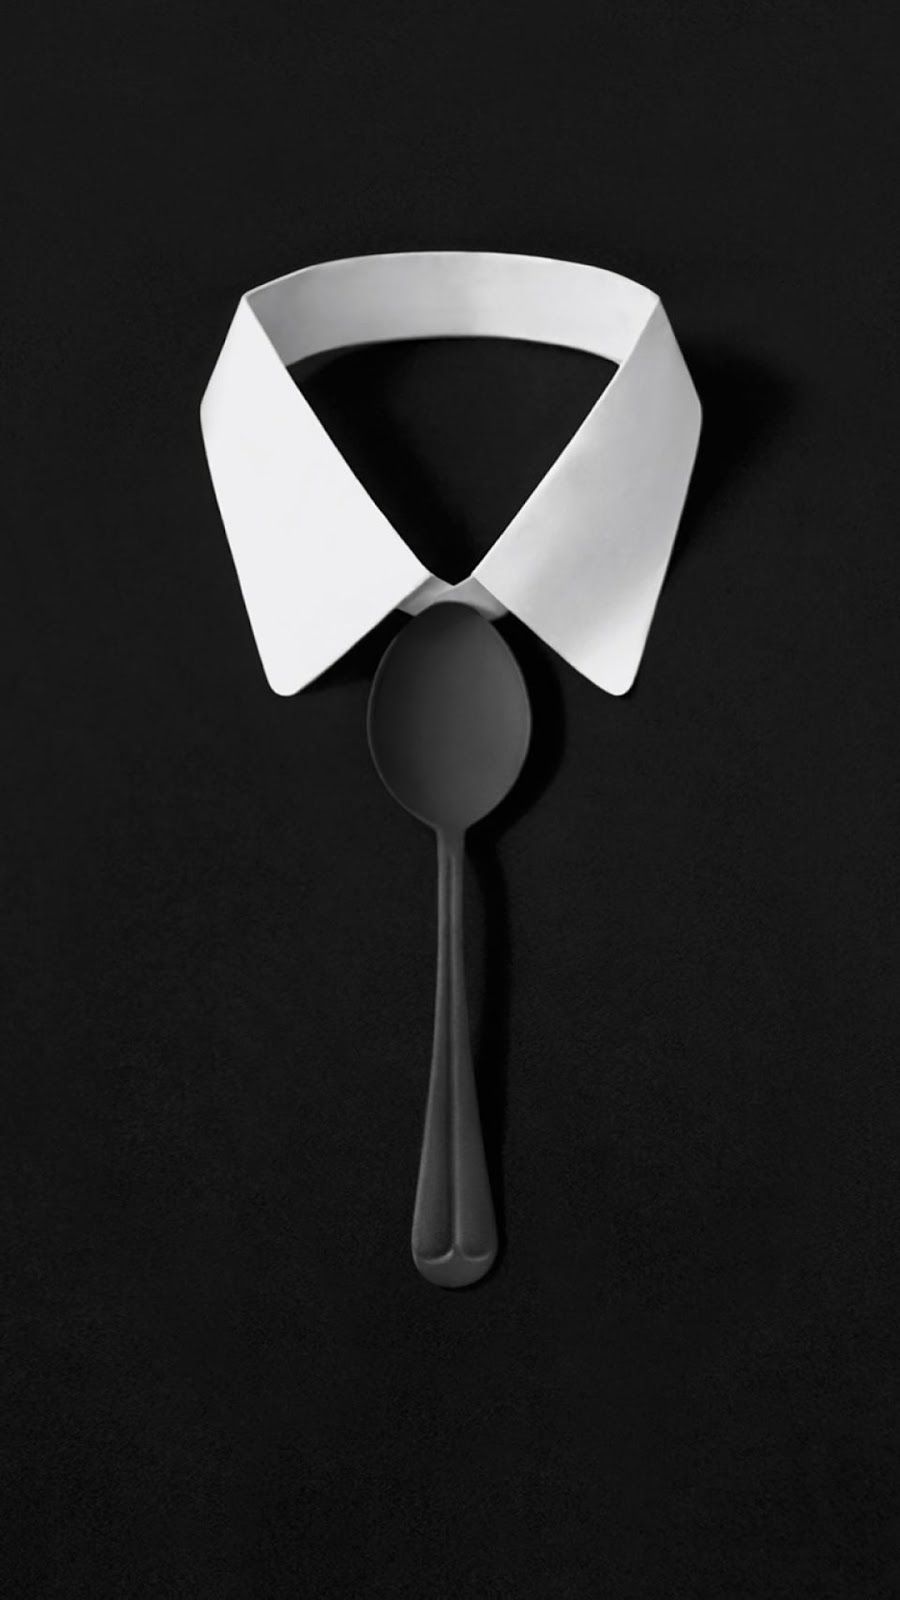 Dark Simple Suit Spoon Tie Simple iPhone 7 and iPhone 7 Plus HD